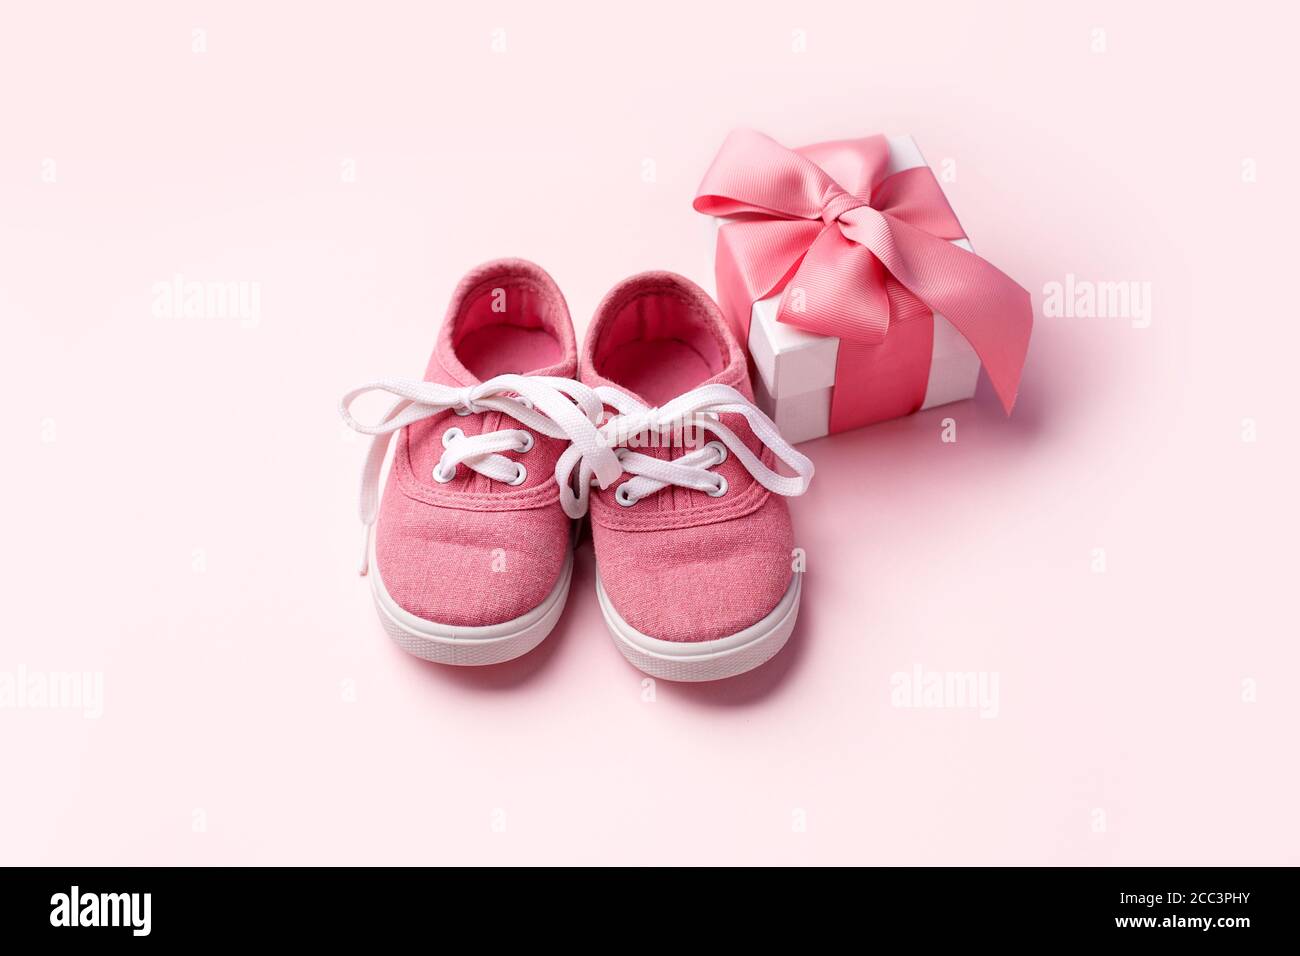 Scarpe rosa per bambini e confezione regalo, concetto di primi passi, compleanno, acquazzone per bambini, attesa, gravidanza, maternità, maternità, genitorialità. Monoch Foto Stock